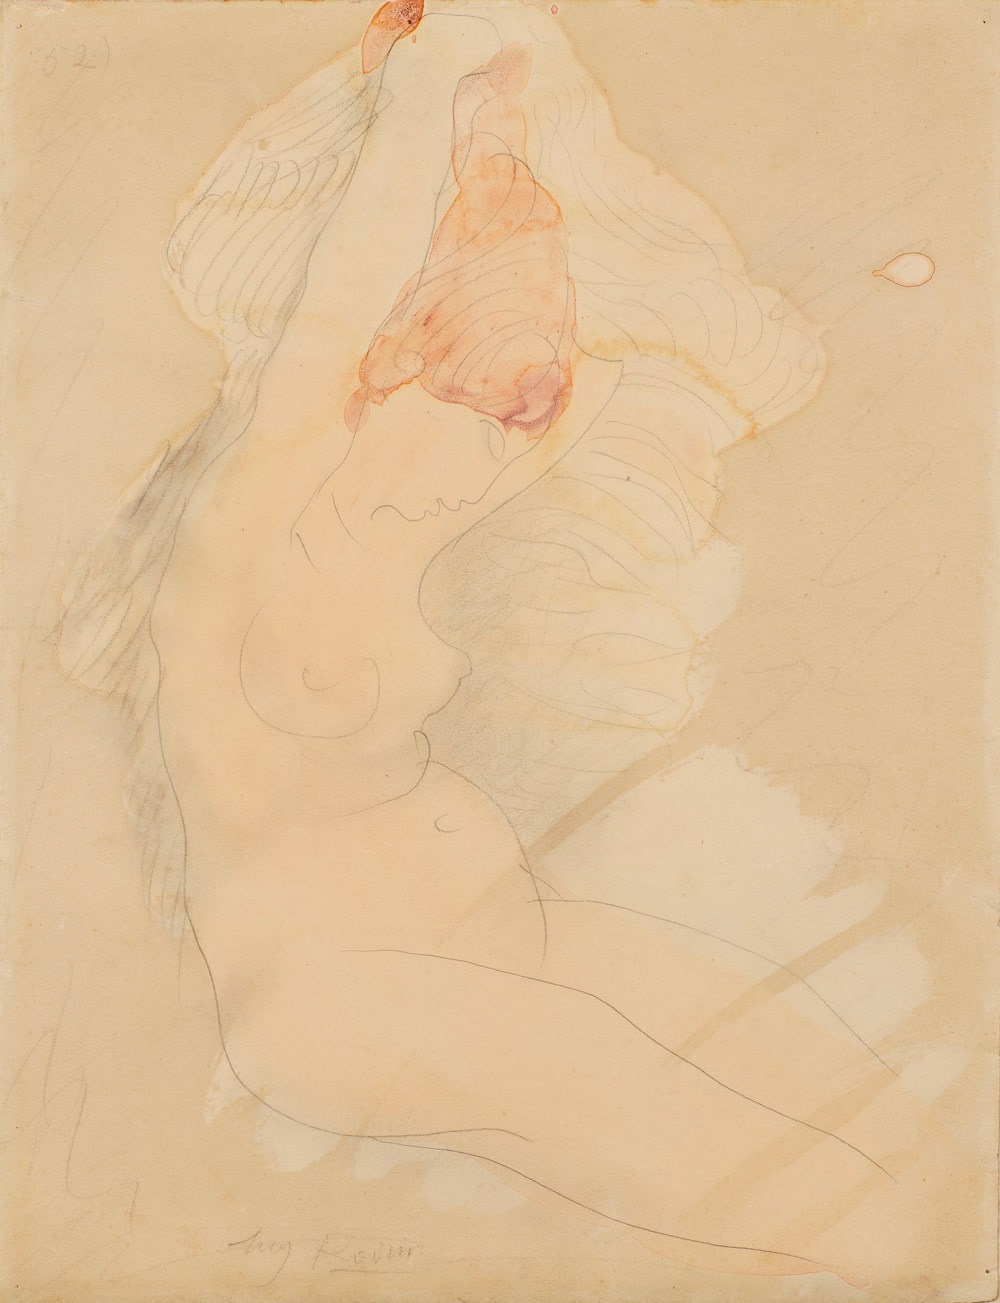 Auguste RODIN, Femme nue assise se coiffant, Watercolor and gouache, black pencil